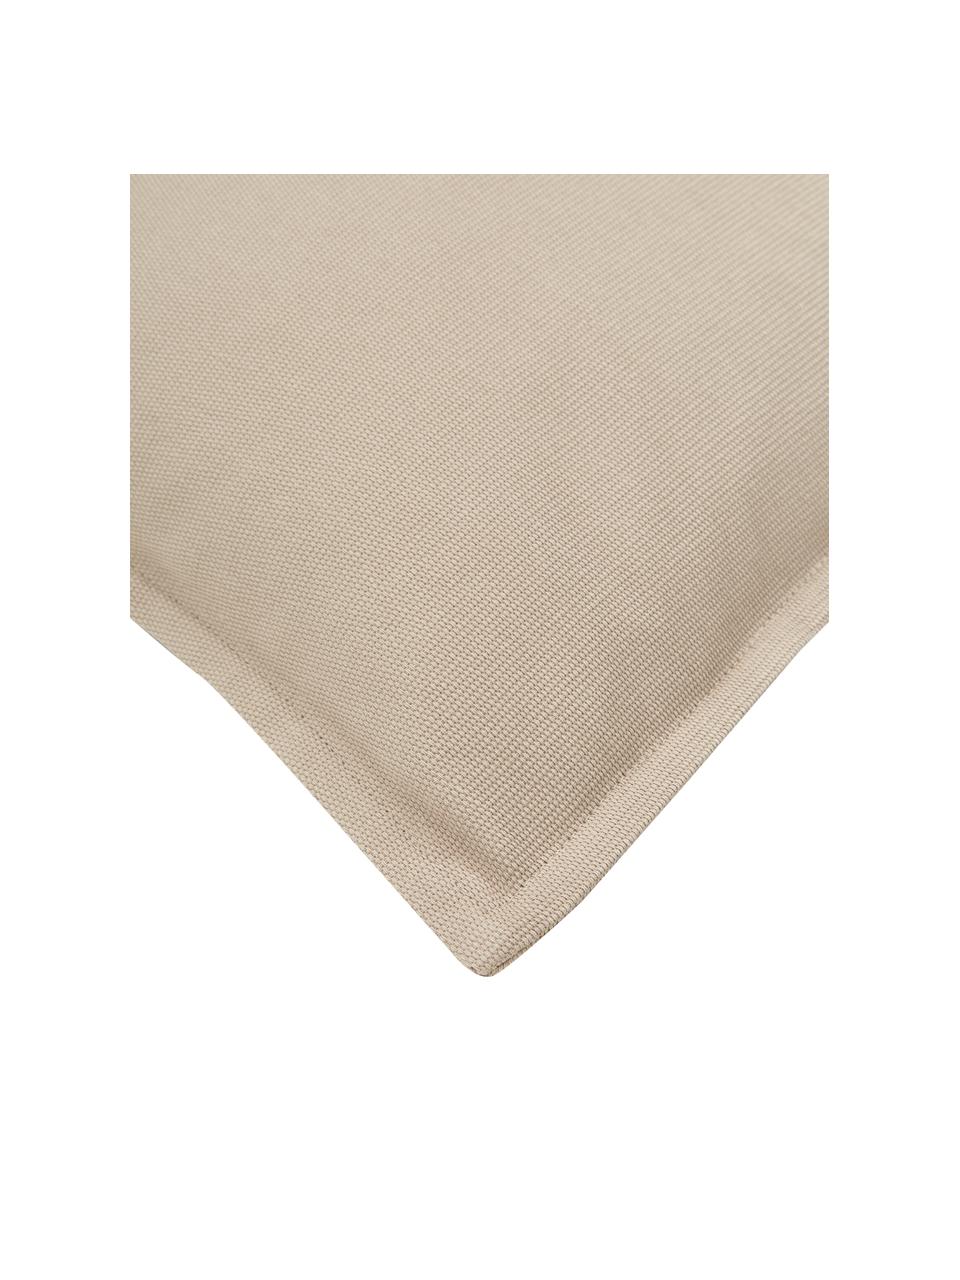 Federa arredo in cotone beige Mads, 100% cotone, Beige, Larg. 40 x Lung. 40 cm